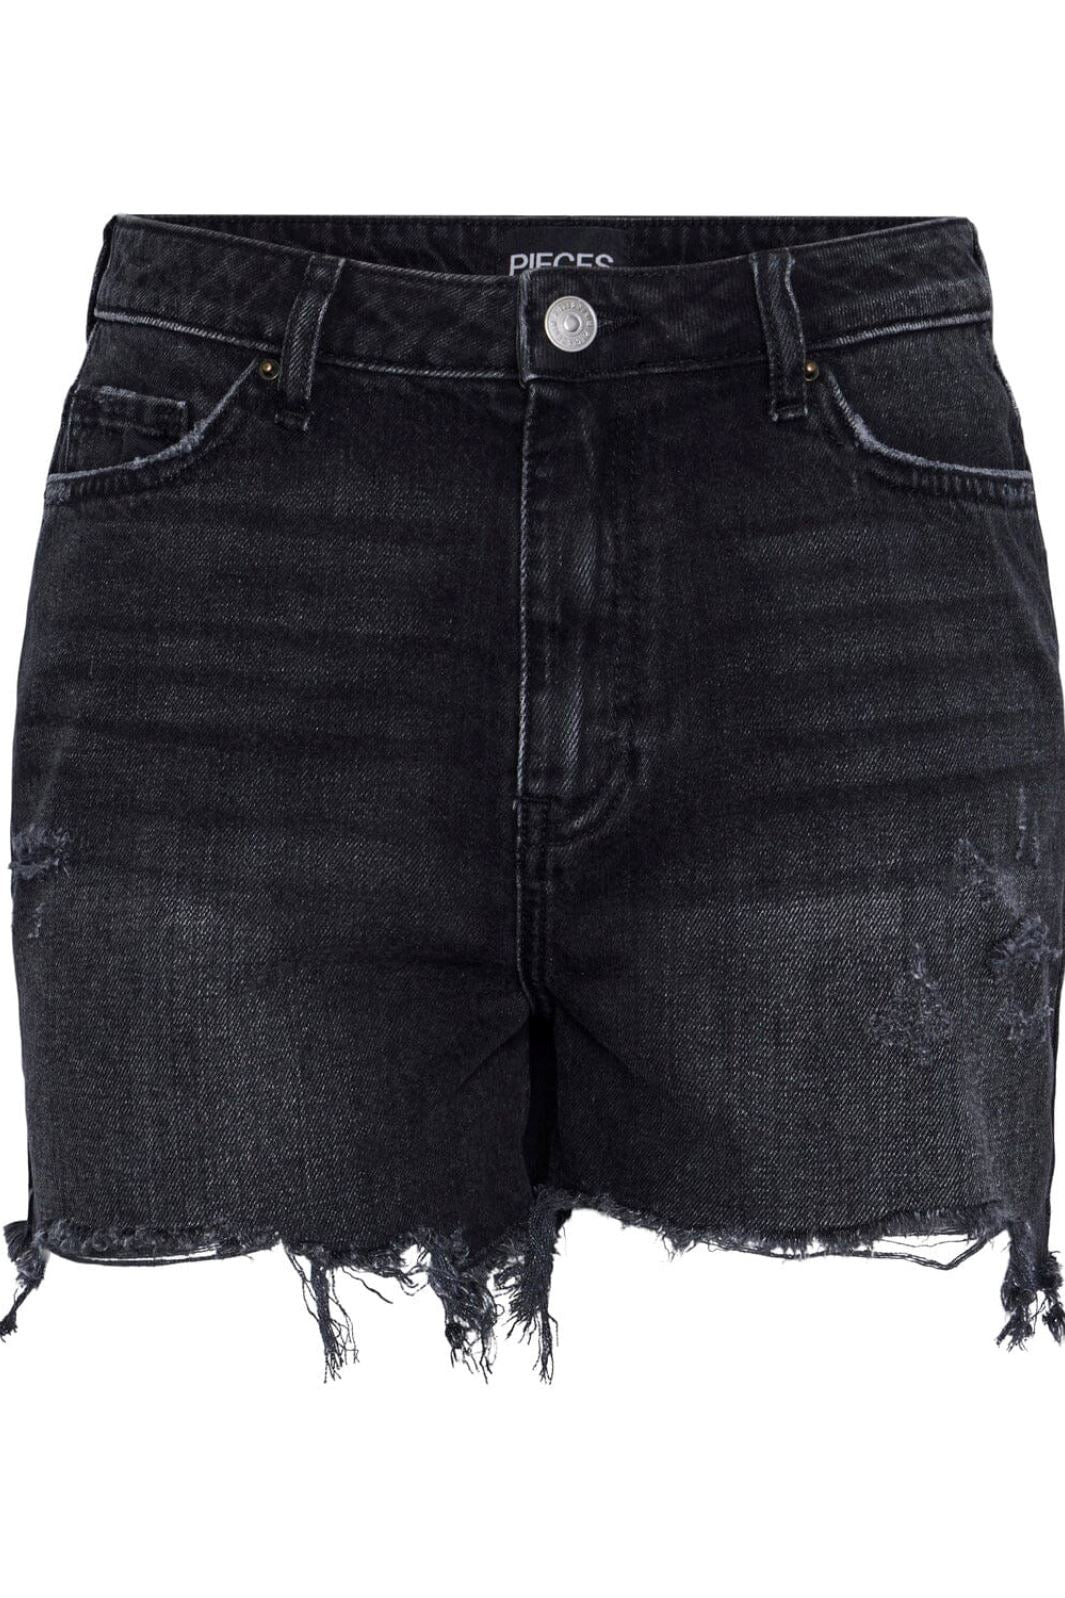 Pieces - Pcsummer Dest Blc Shorts - 4405832 Black Shorts 